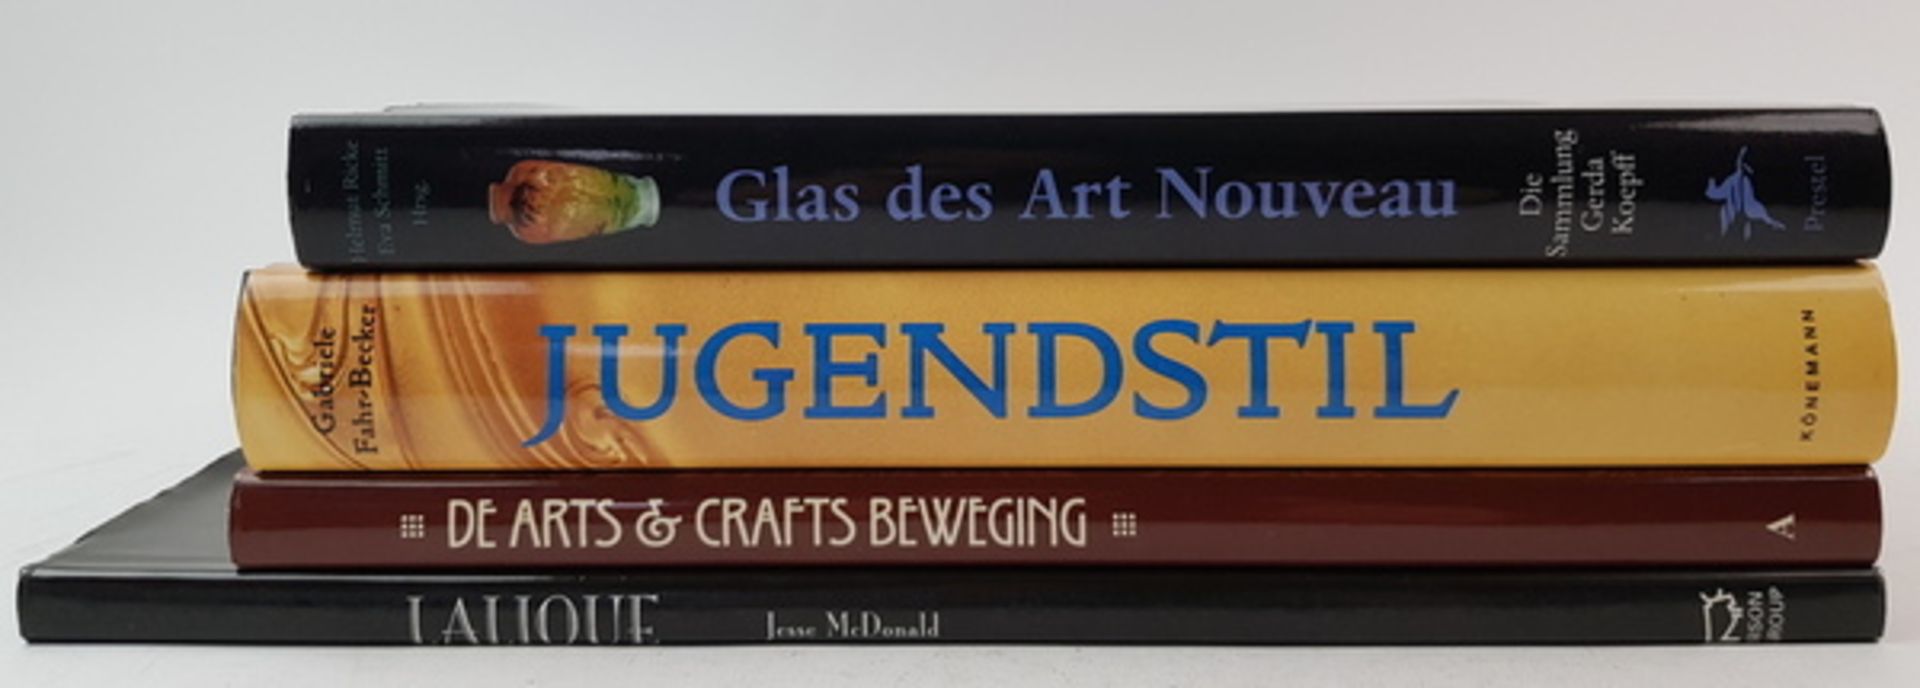 (Boeken) (Kunst) Een lot Art NouveauEen lot van 4 boeken over Art Nouveau, waaronder een boek over